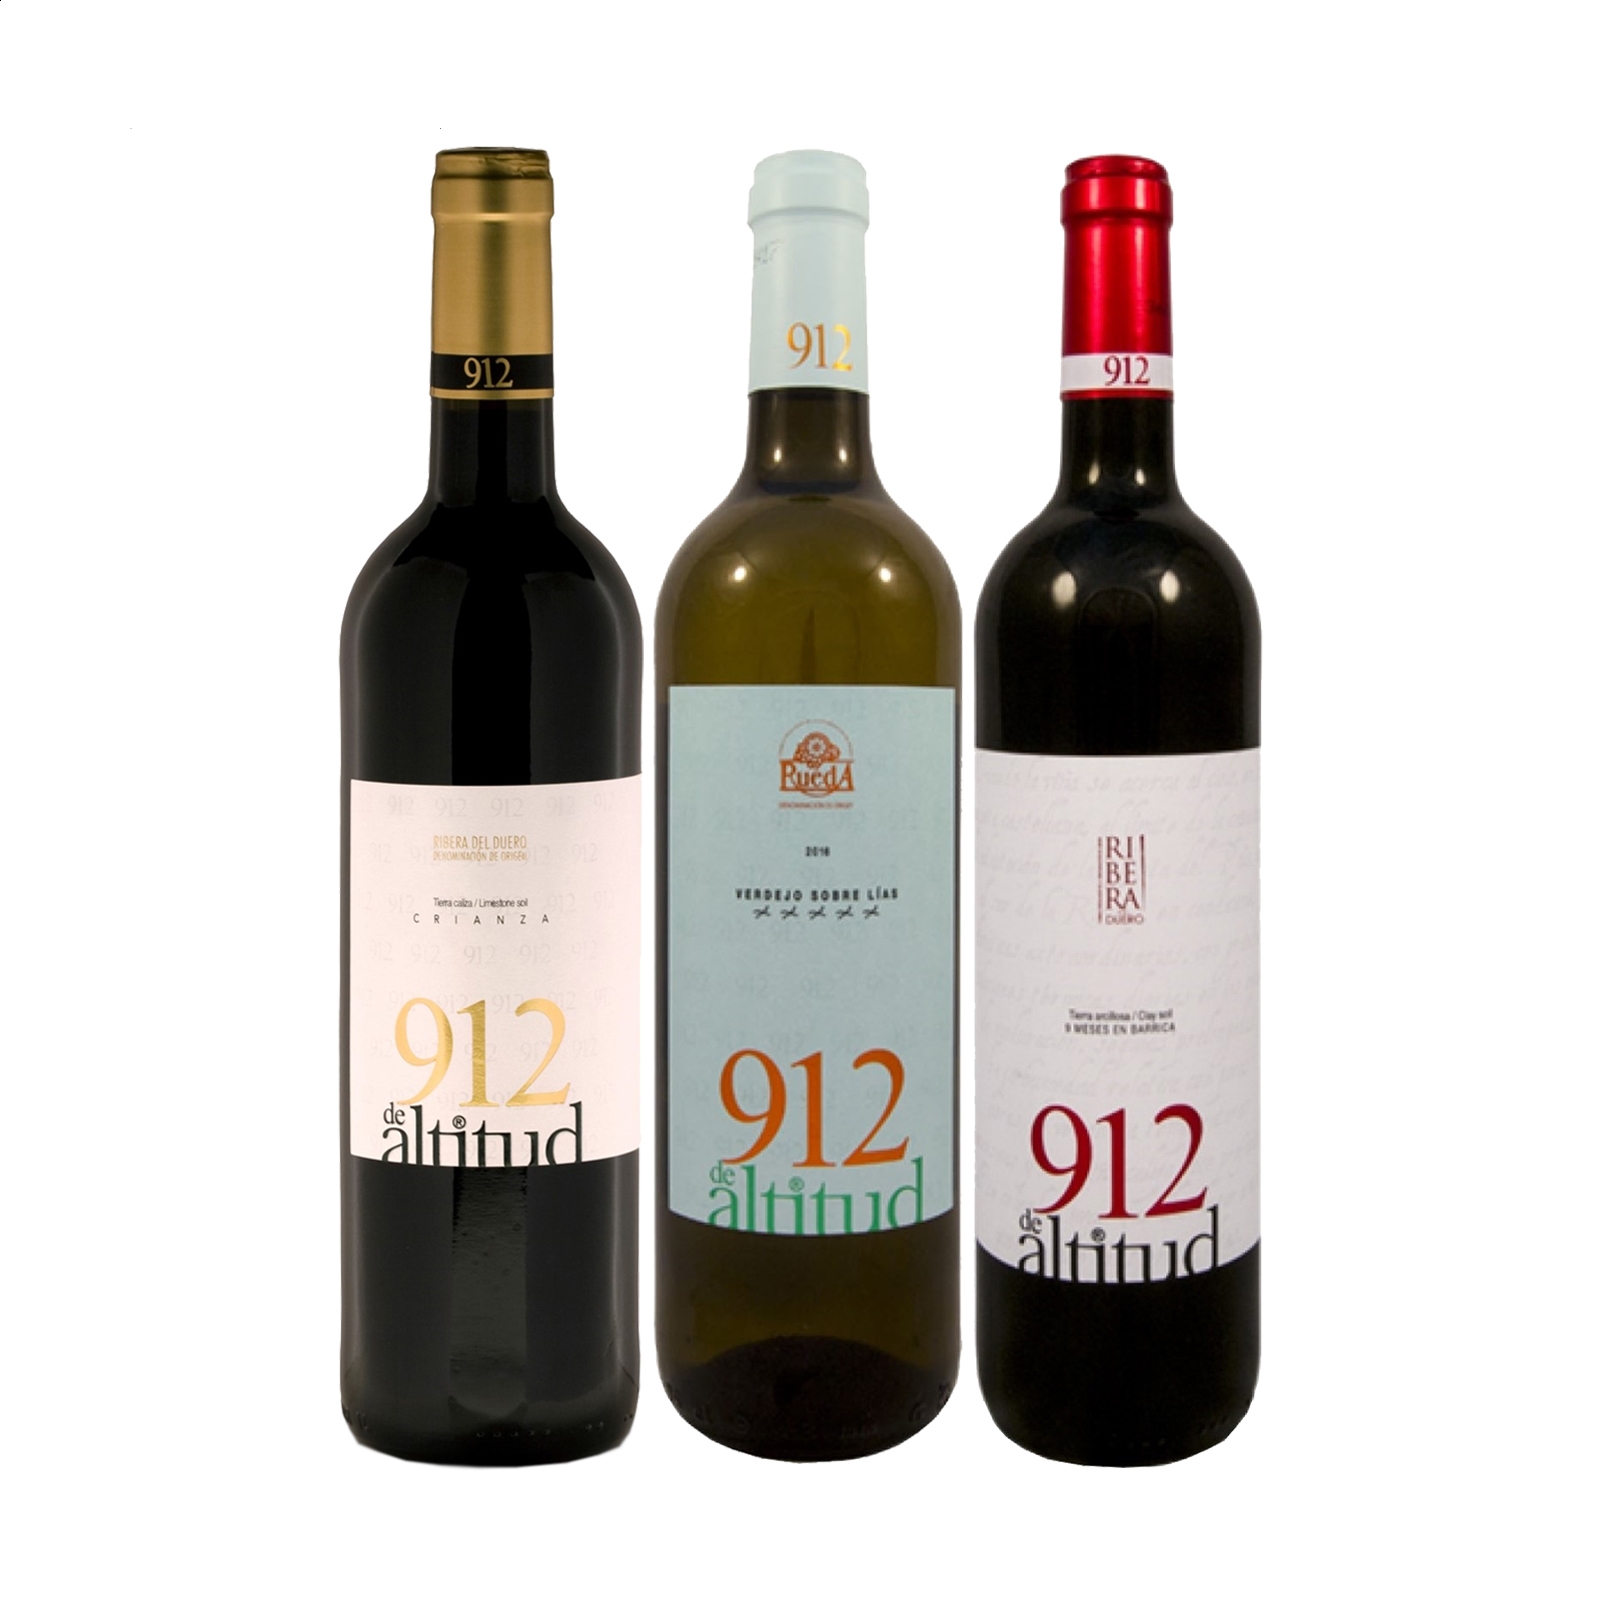 Lote 912 de Altitud - Vino tinto D.O. Ribera del Duero y vino blanco D.O. Rueda 75cl, 3uds